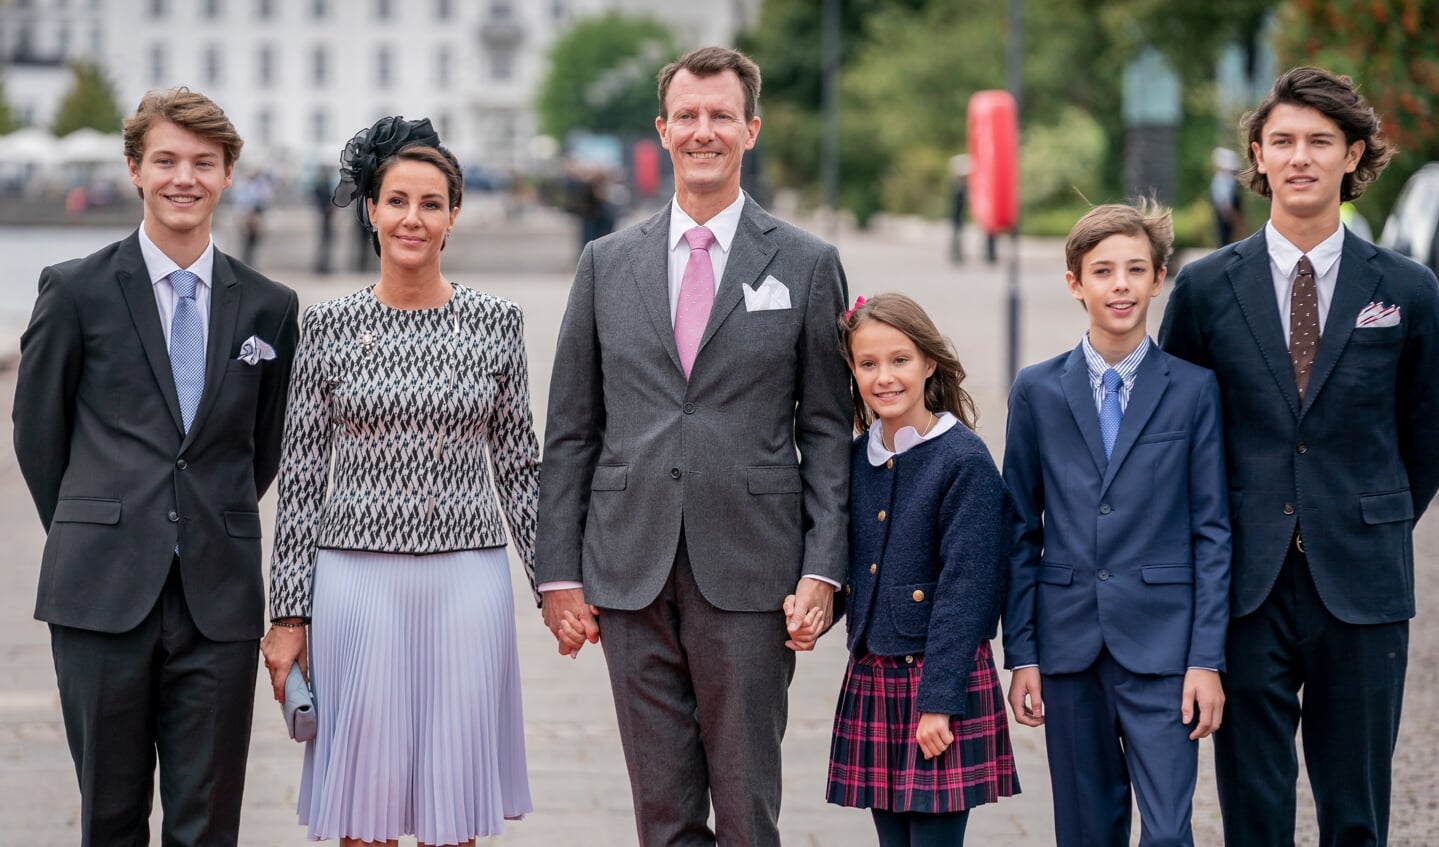 Prinsesse Marie, Prins Joachim, Prins Felix, Prins Nikolai, prins Henrik og prinsesse Athena ankommer til frokostarrangement på Kongeskibet Dannebrog under fejringen af dronningens 50-års regeringsjubilæum i København søndag den 11. september 2022. Arkivfoto: 